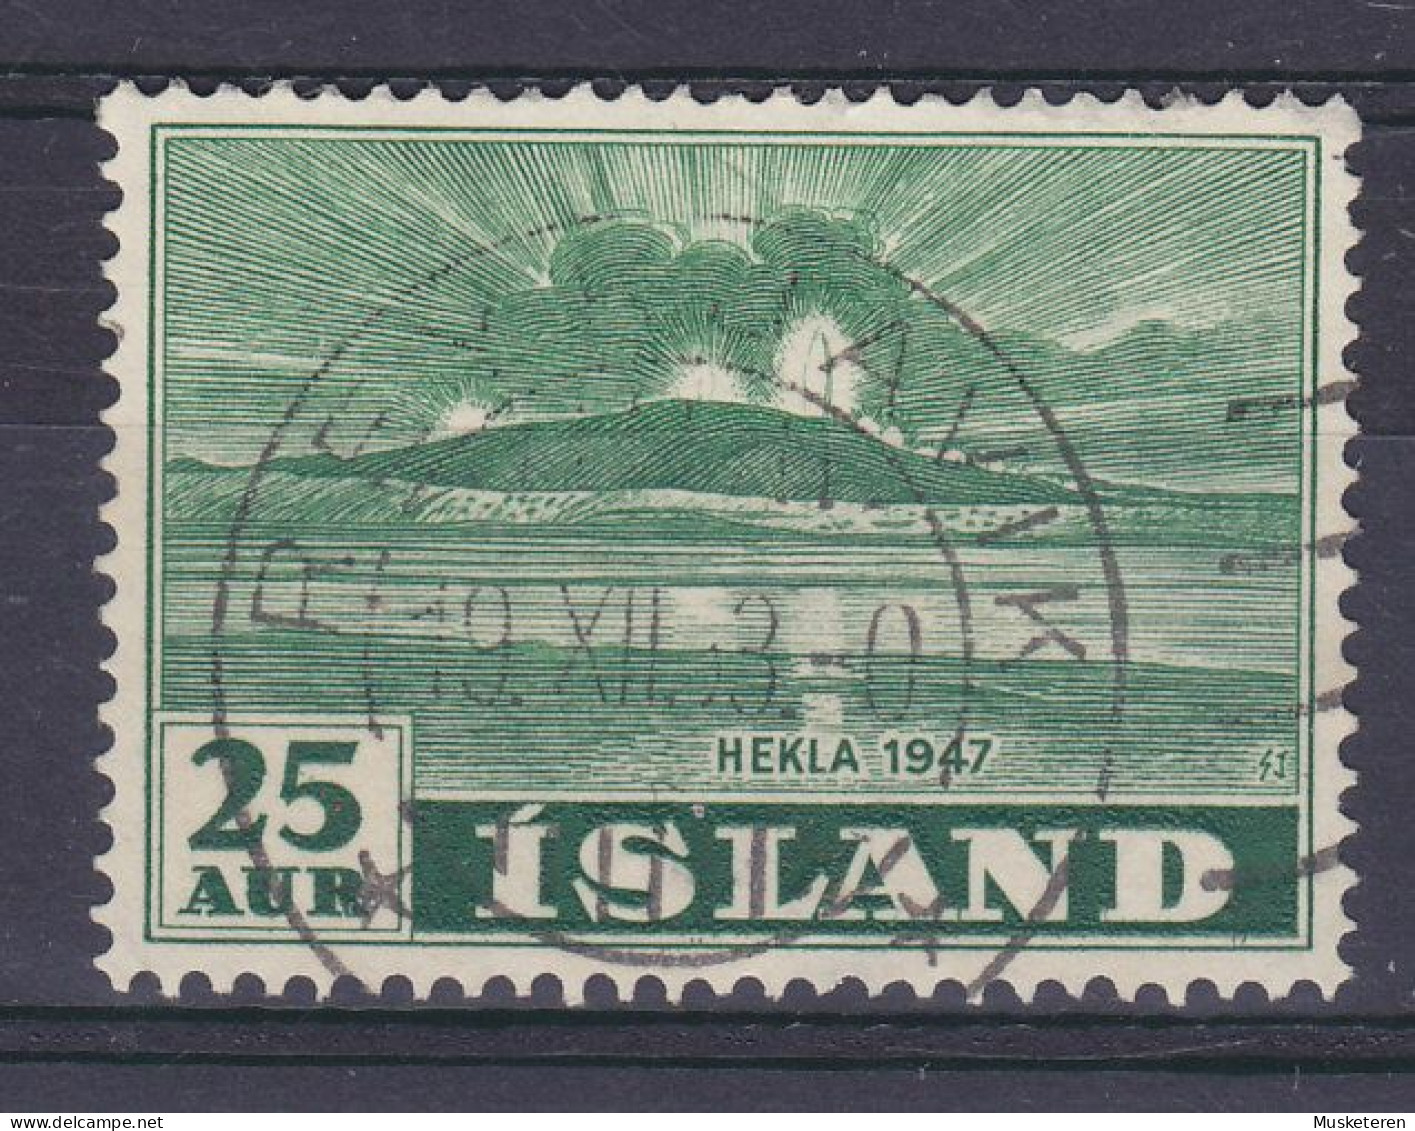 Iceland 1948 Mi. 248, 25 Aur Vulkan Vom Meer Aus Gesehen Deluxe REYKJAVIK Cancel !! - Oblitérés